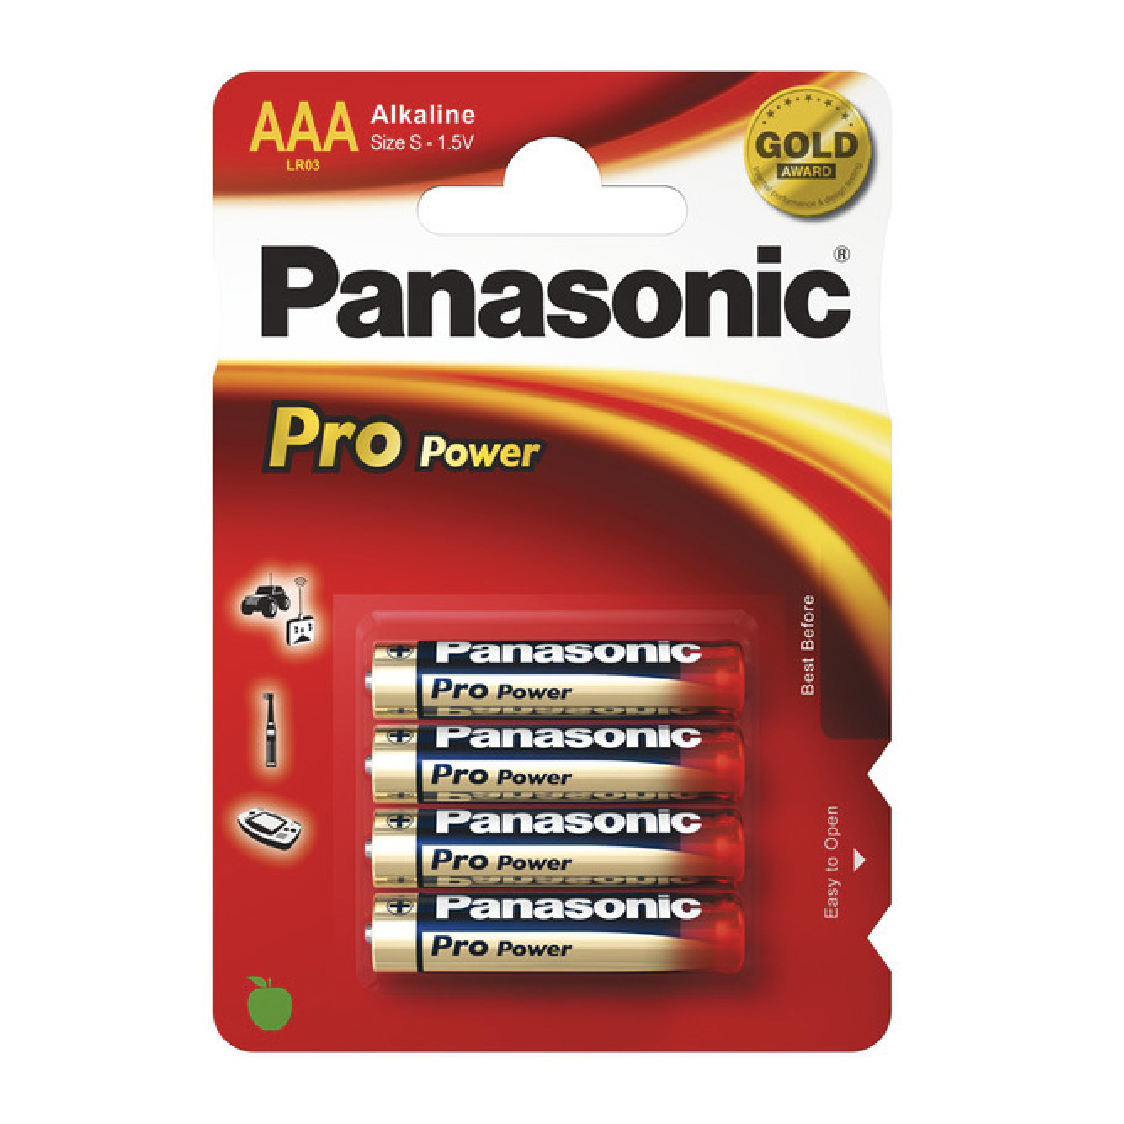 Panasonic Pro Power AAA/LR03 Battery